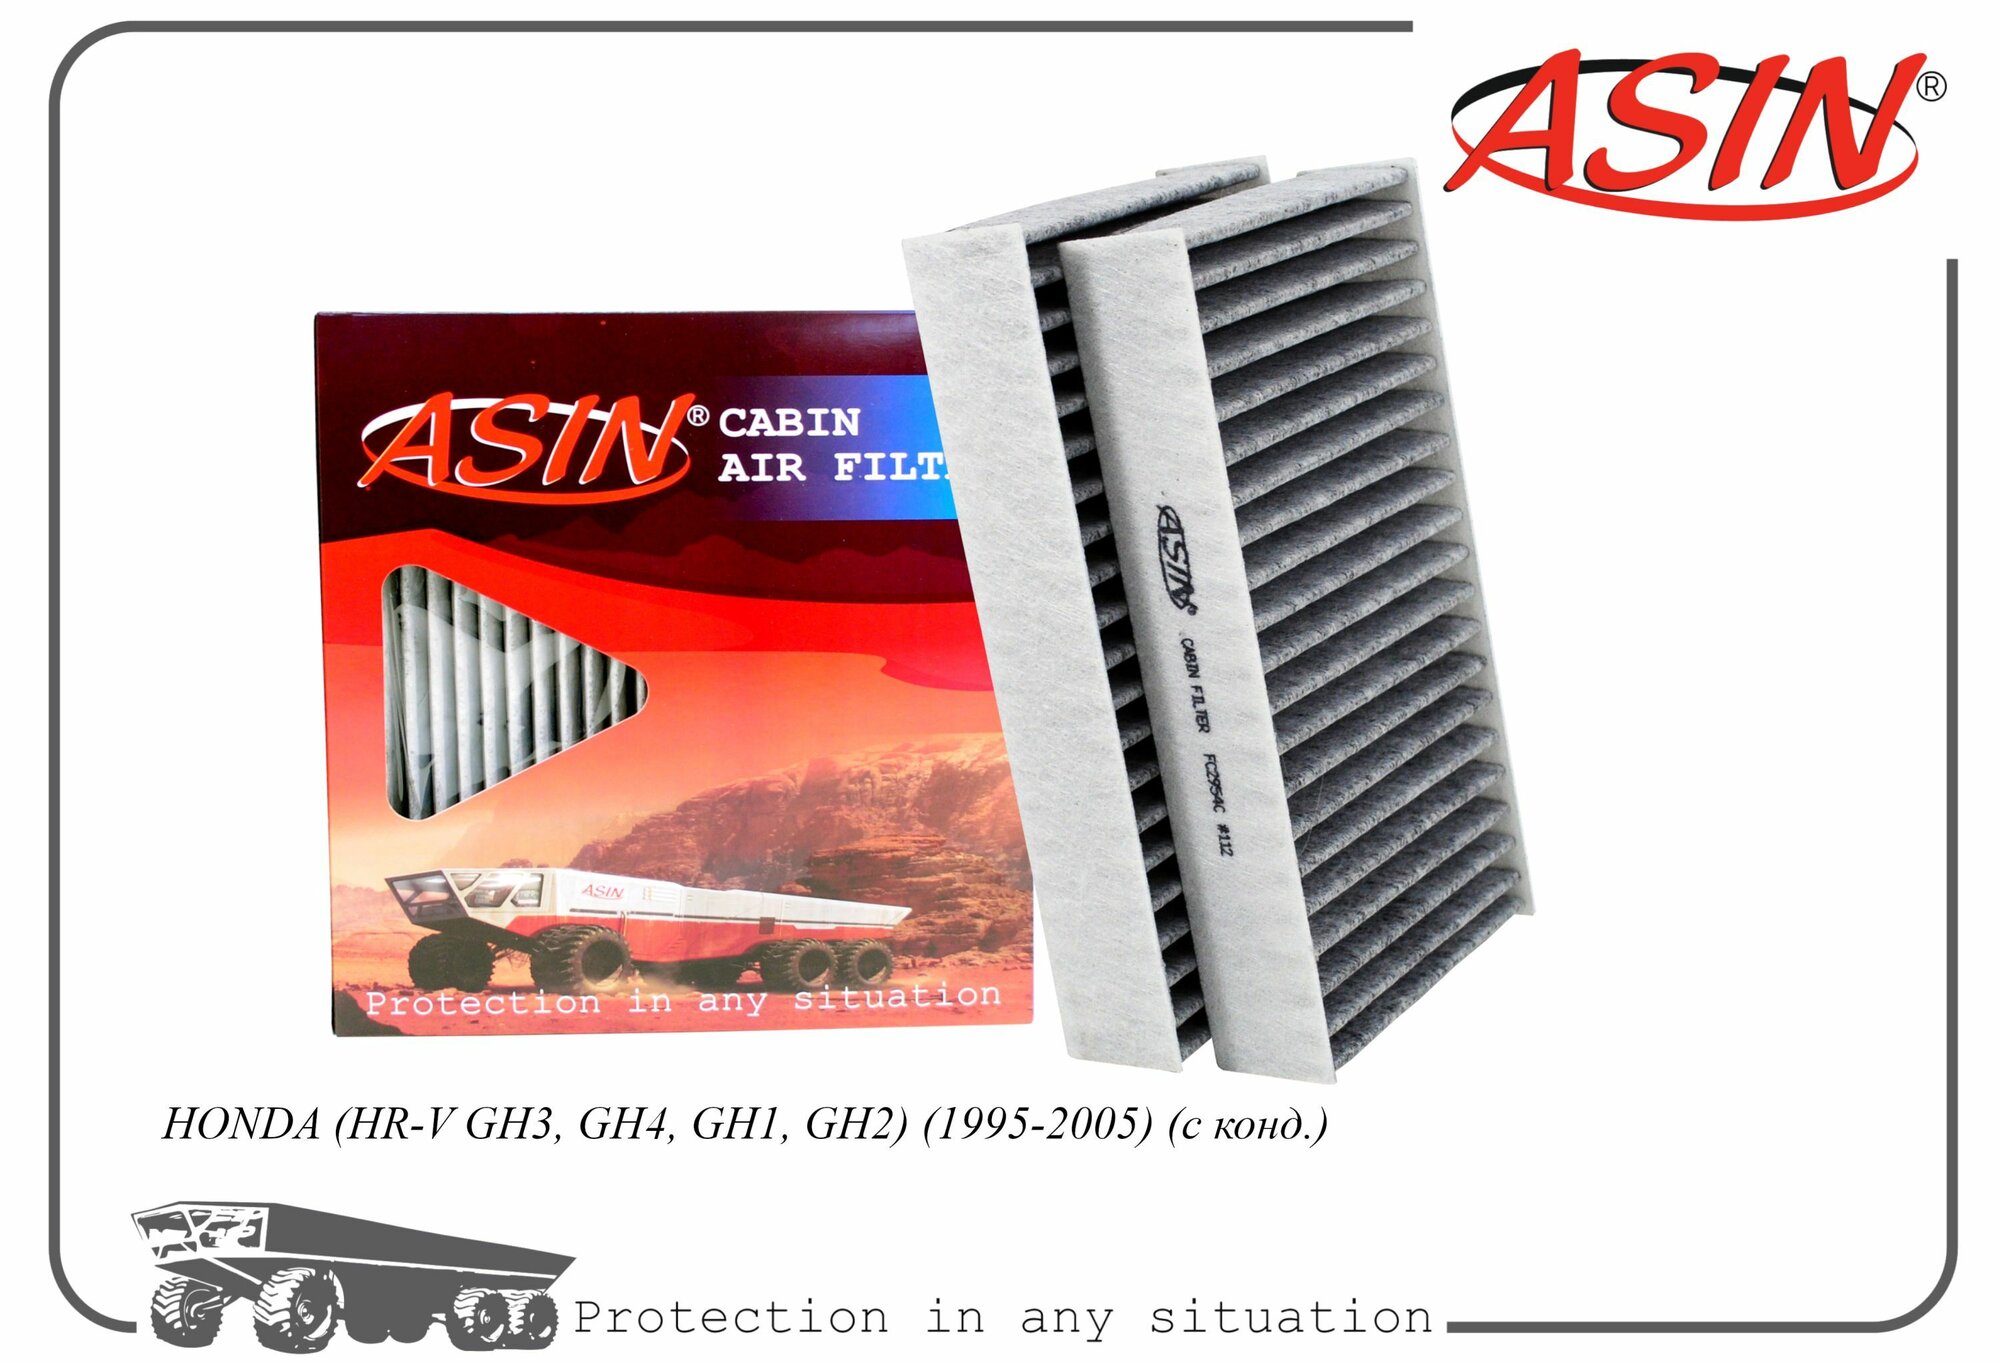 Фильтр салонный 80291-S2H-505/ASIN.FC2954C угольный 2 шт для HONDA HR-V GH3, GH4, GH1, GH2 1995-2005 с конд.